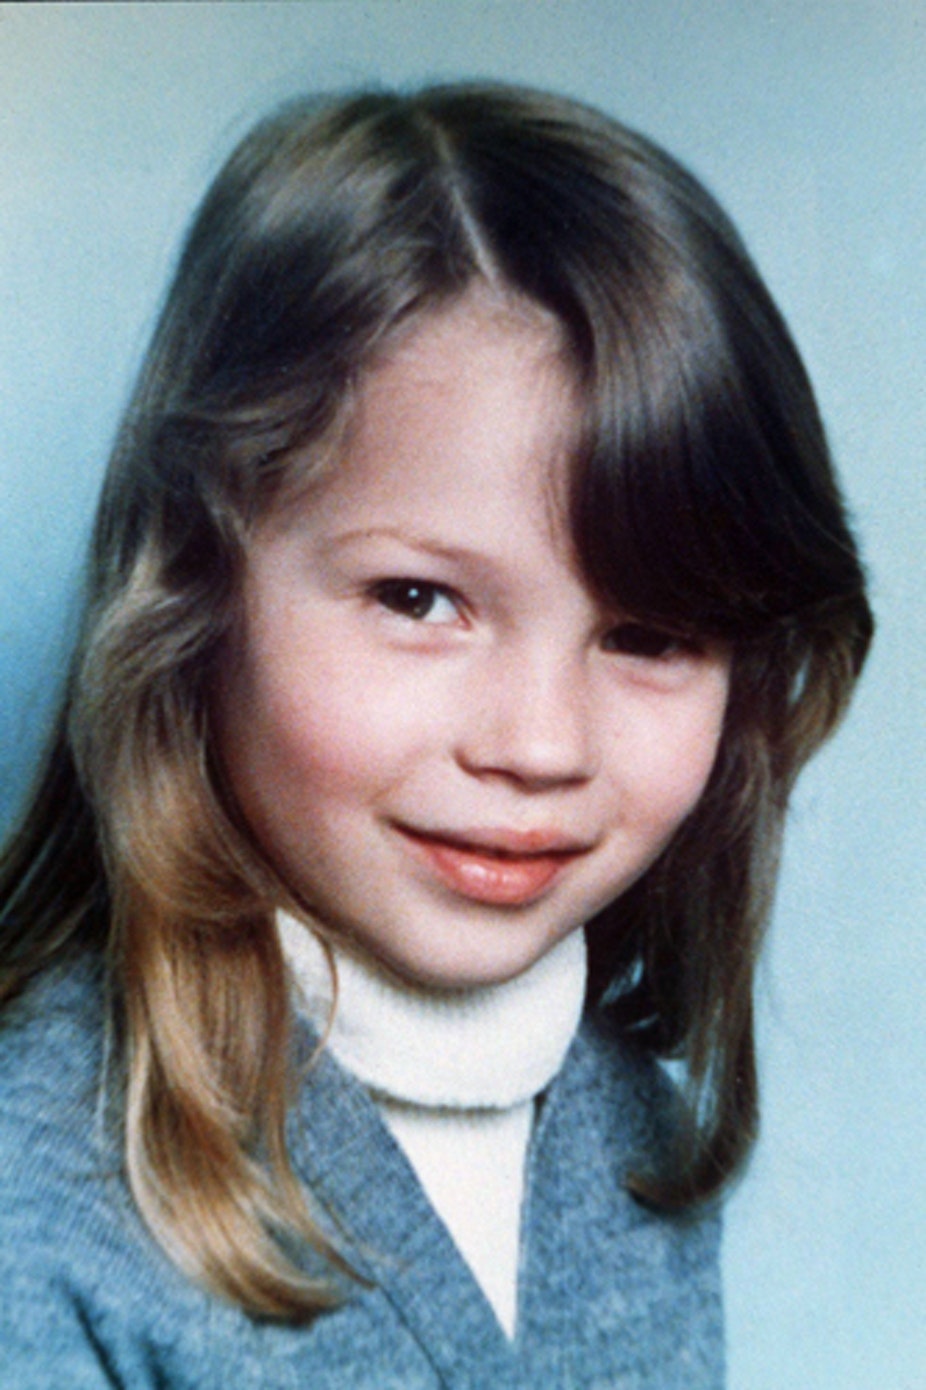 Sådan så topmodellen Kate Moss ud på sit første skolebillede